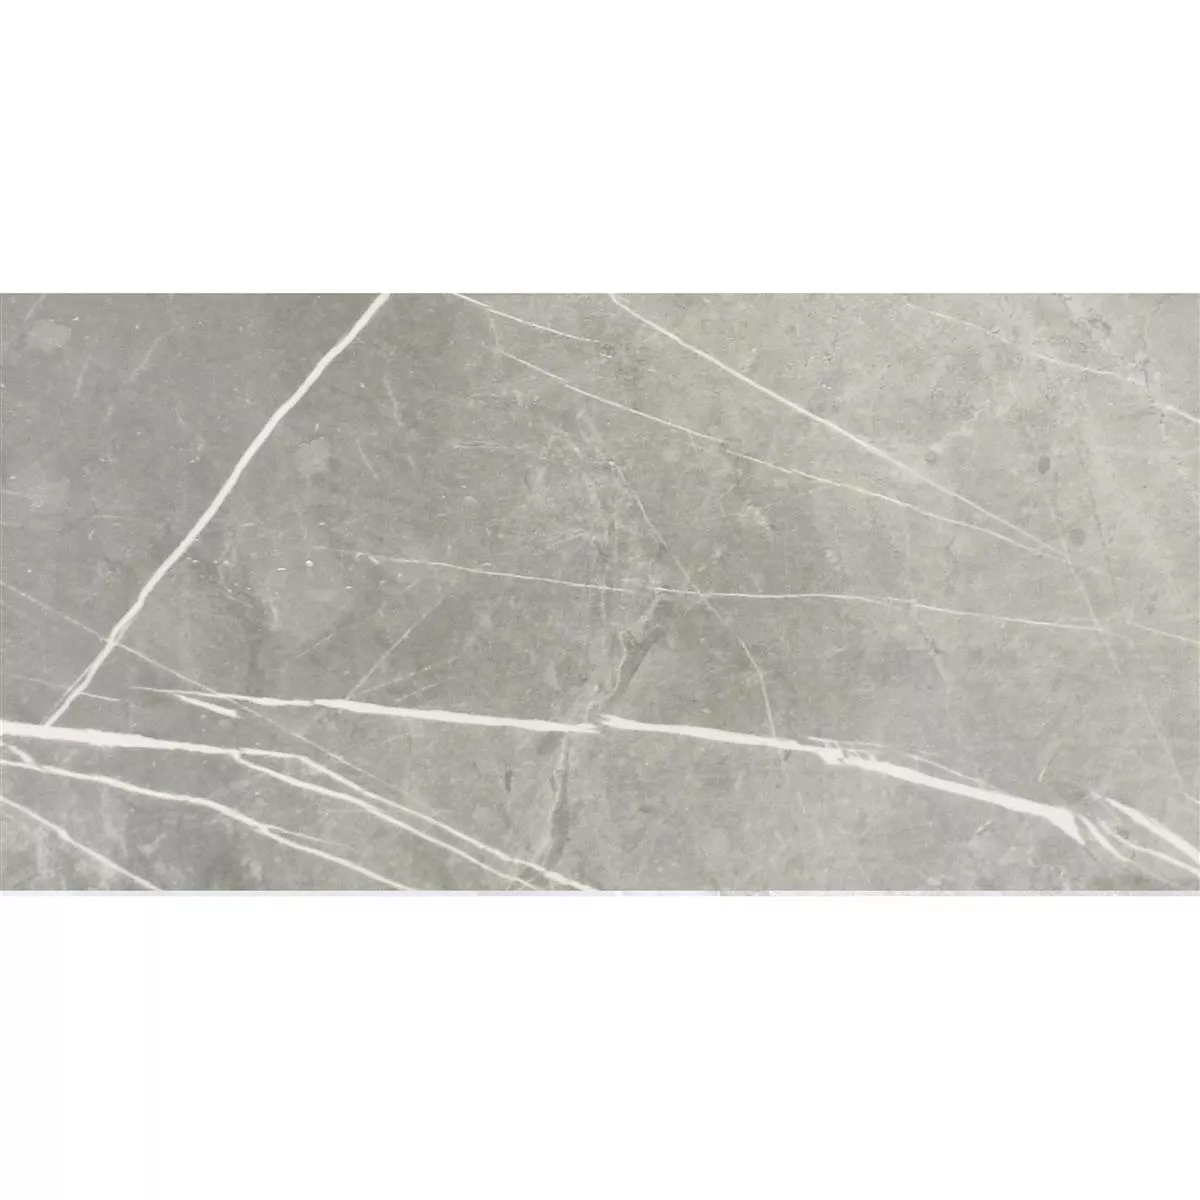 Πλακάκια Δαπέδου Astara Eμφάνιση Φυσικής Πέτρας Αμεμπτος Lux 30x60cm